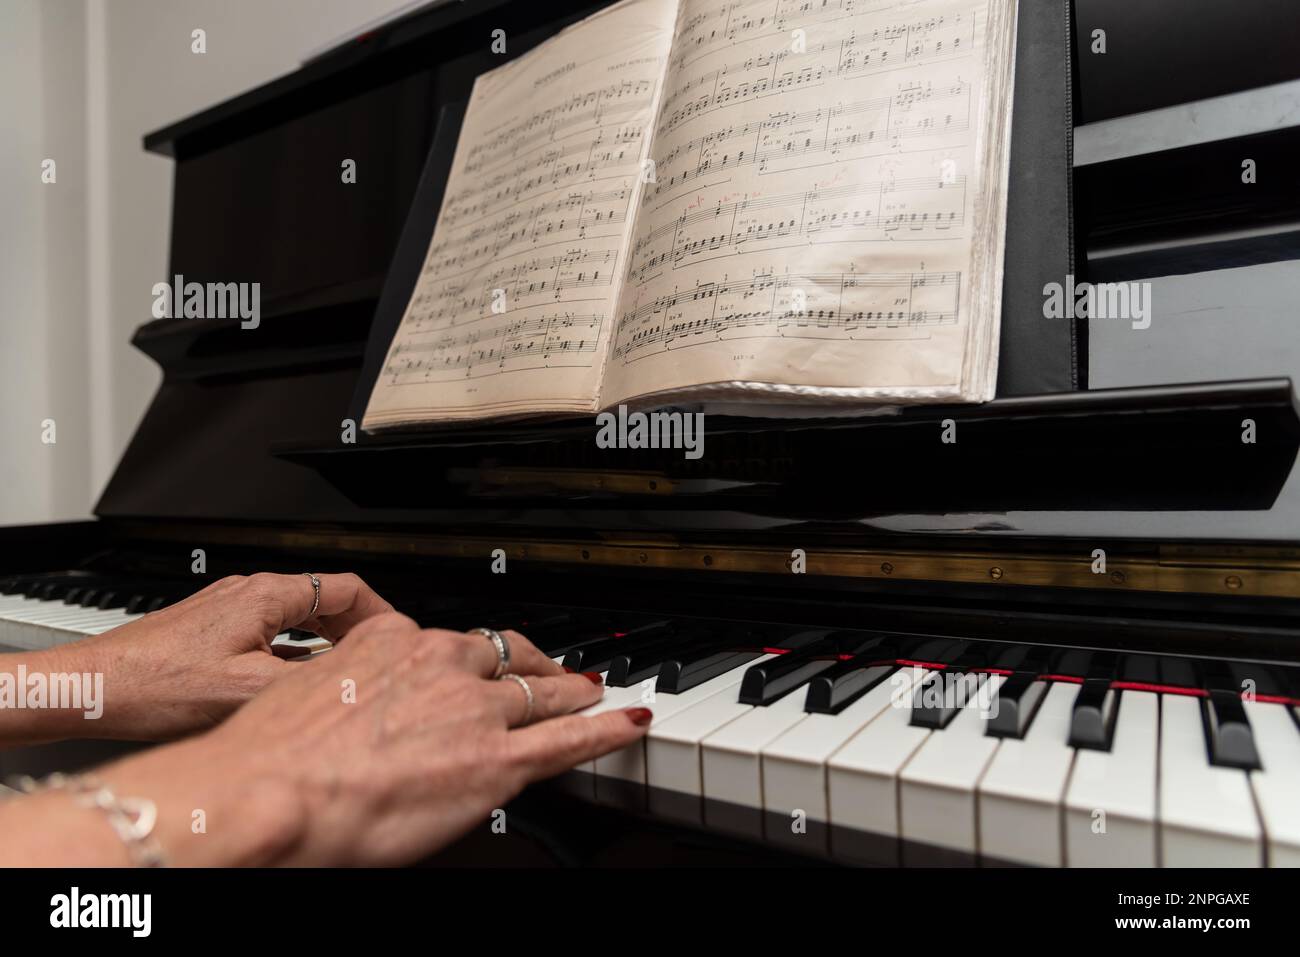 Ein talentierter Pianist spielt romantische Musik auf dem Klavier. Musik und Perfektion. Stockfoto